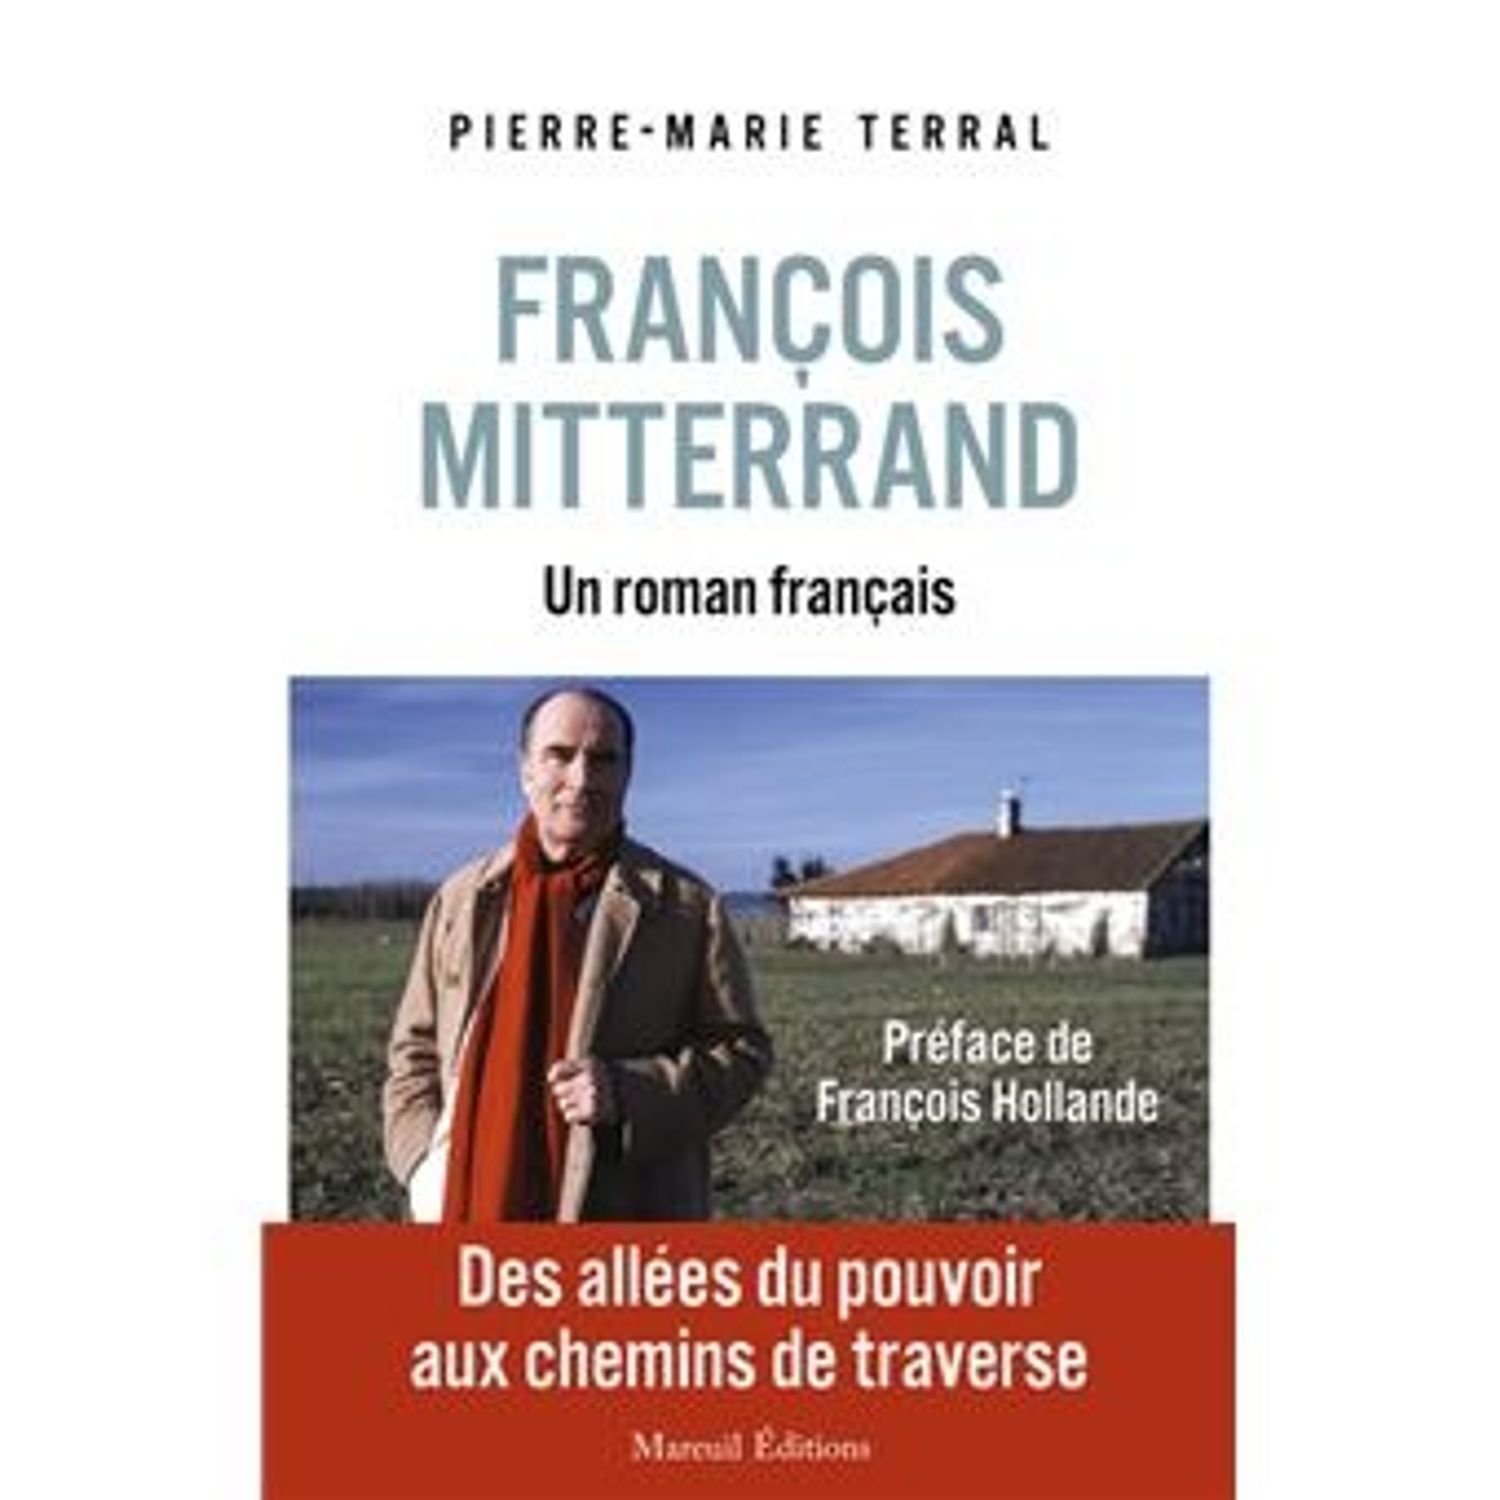  Pierre-Marie Terral, auteur de “François Mitterrand, un roman...